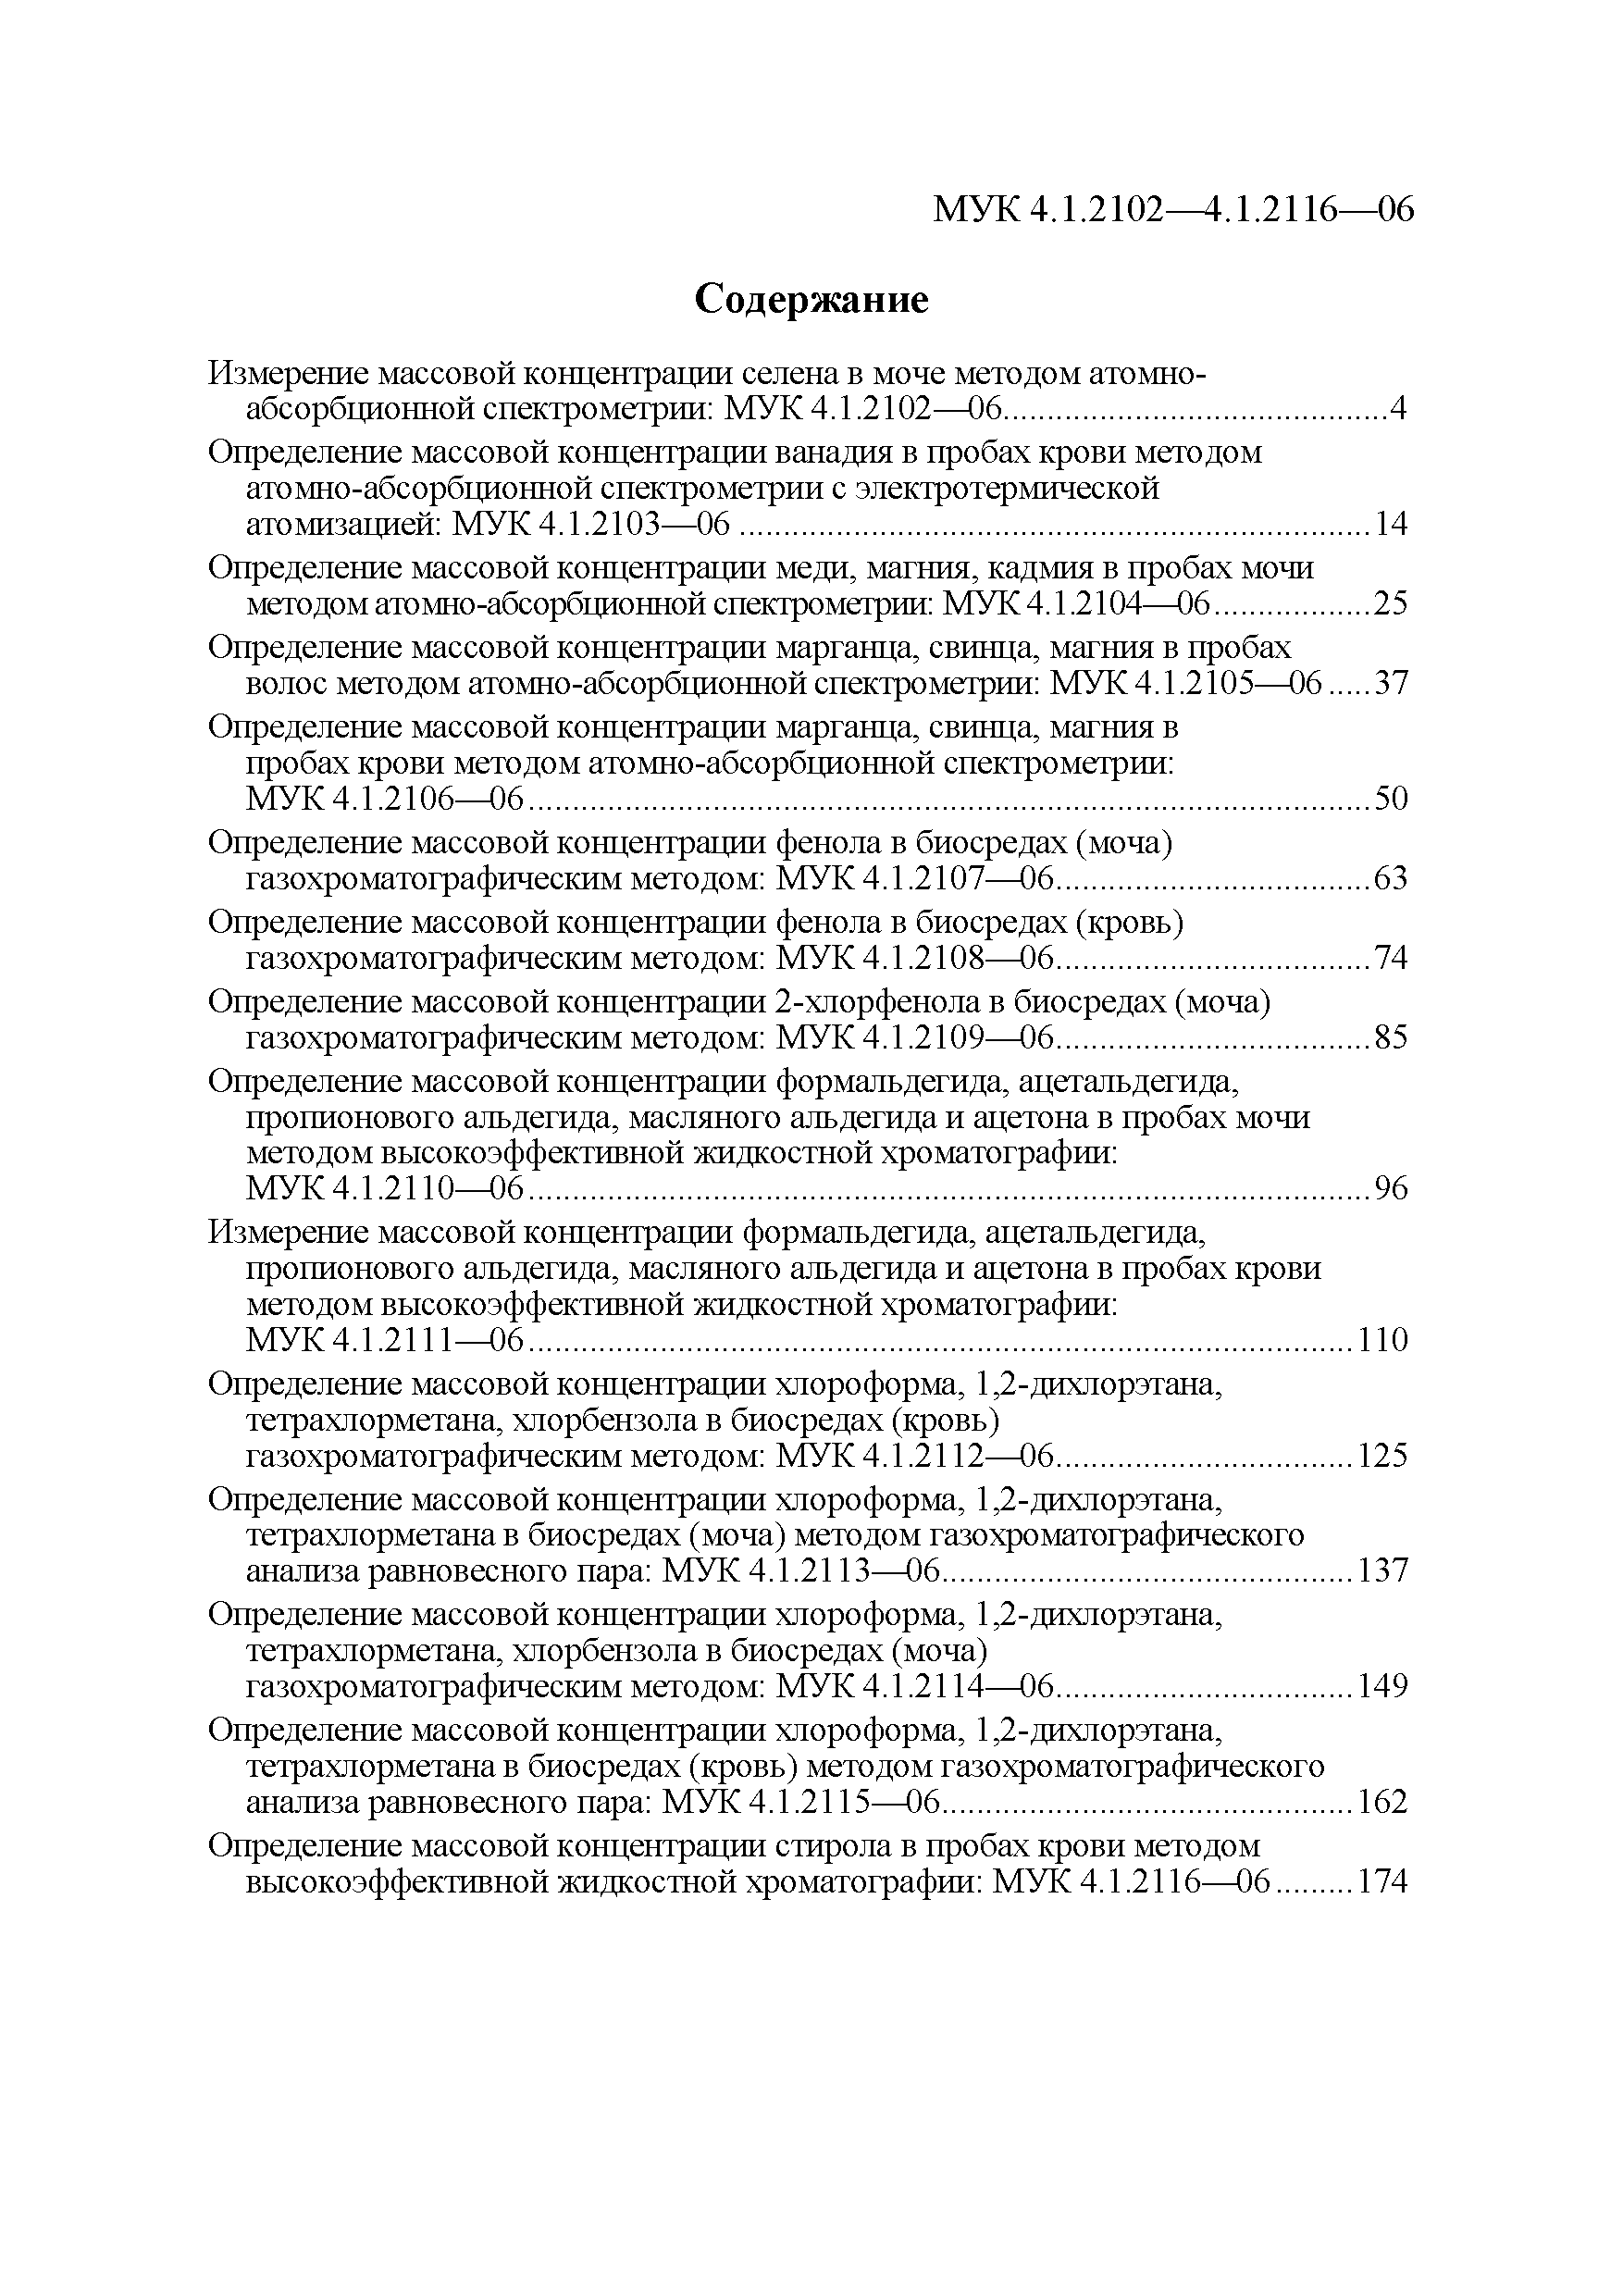 МУК 4.1.2103-06